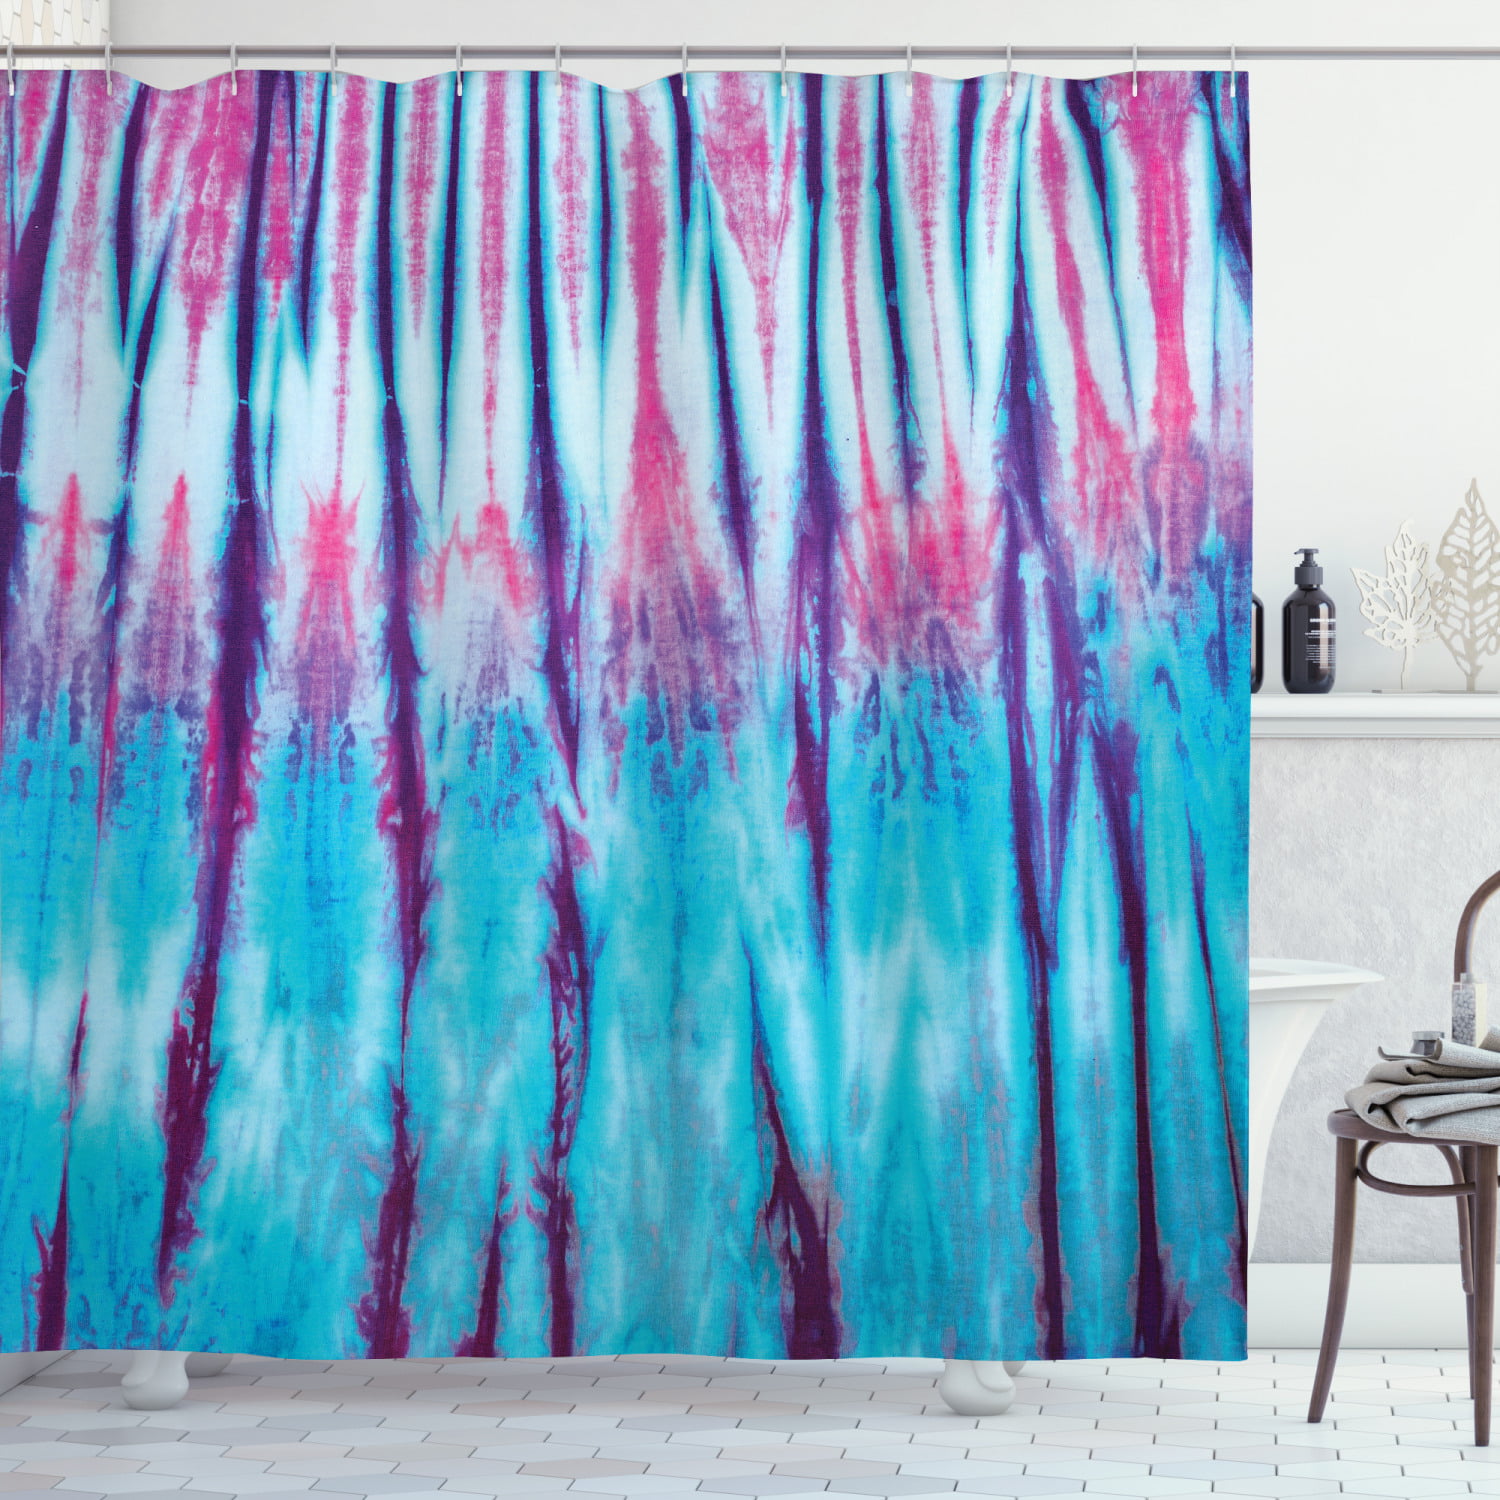 Bend Rainbow Waterproof Bathroom Polyester Shower Curtain Liner Water Resistant 